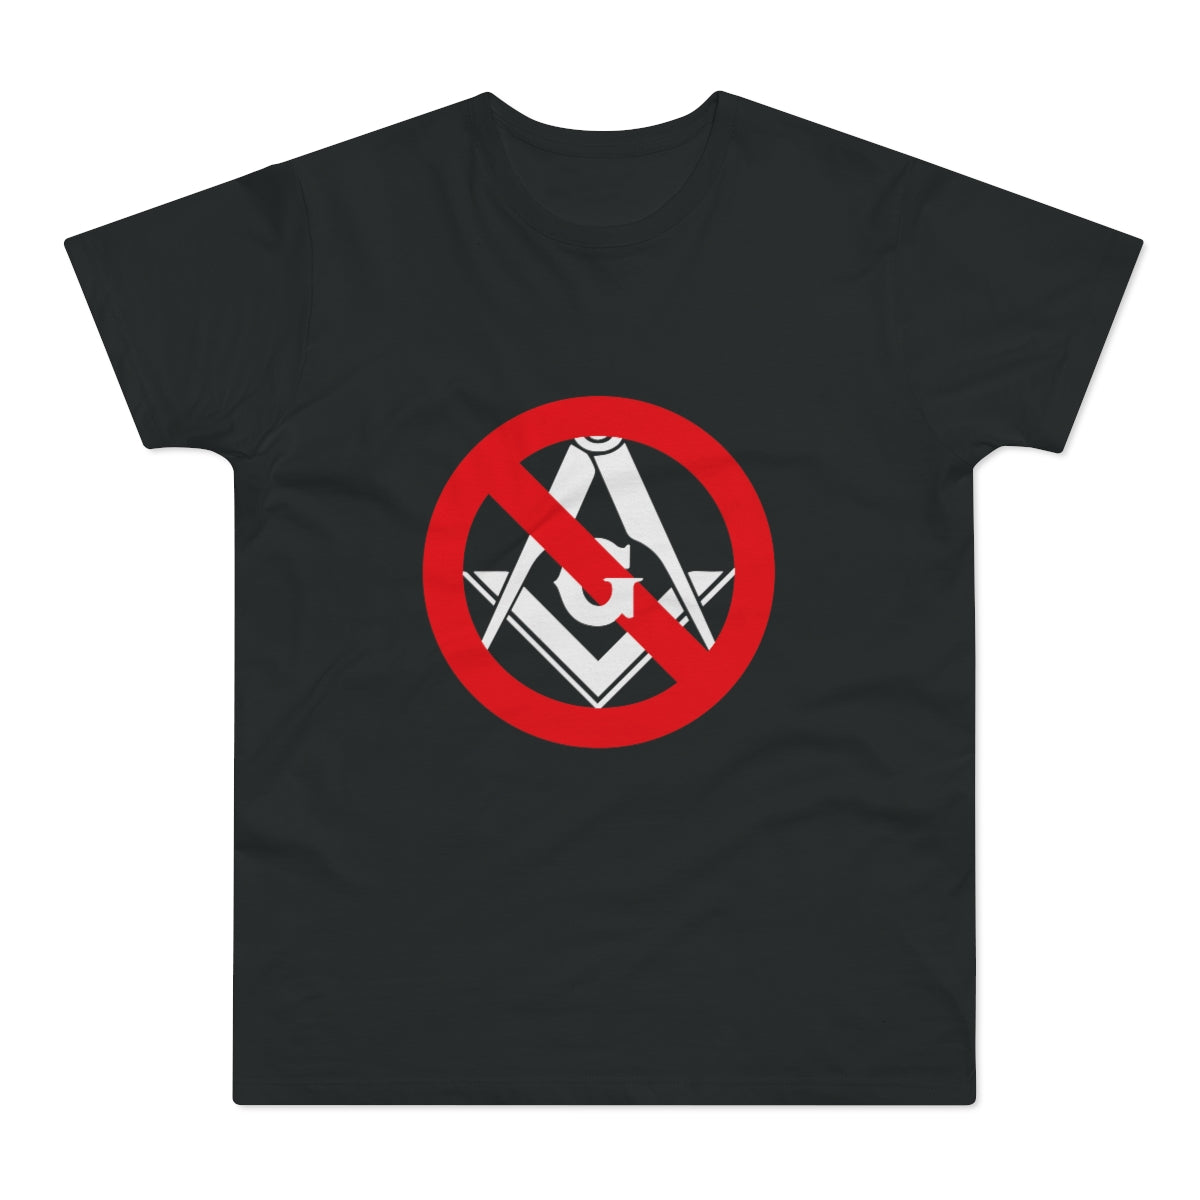 Vapaamuurareita vastaan | T-paita